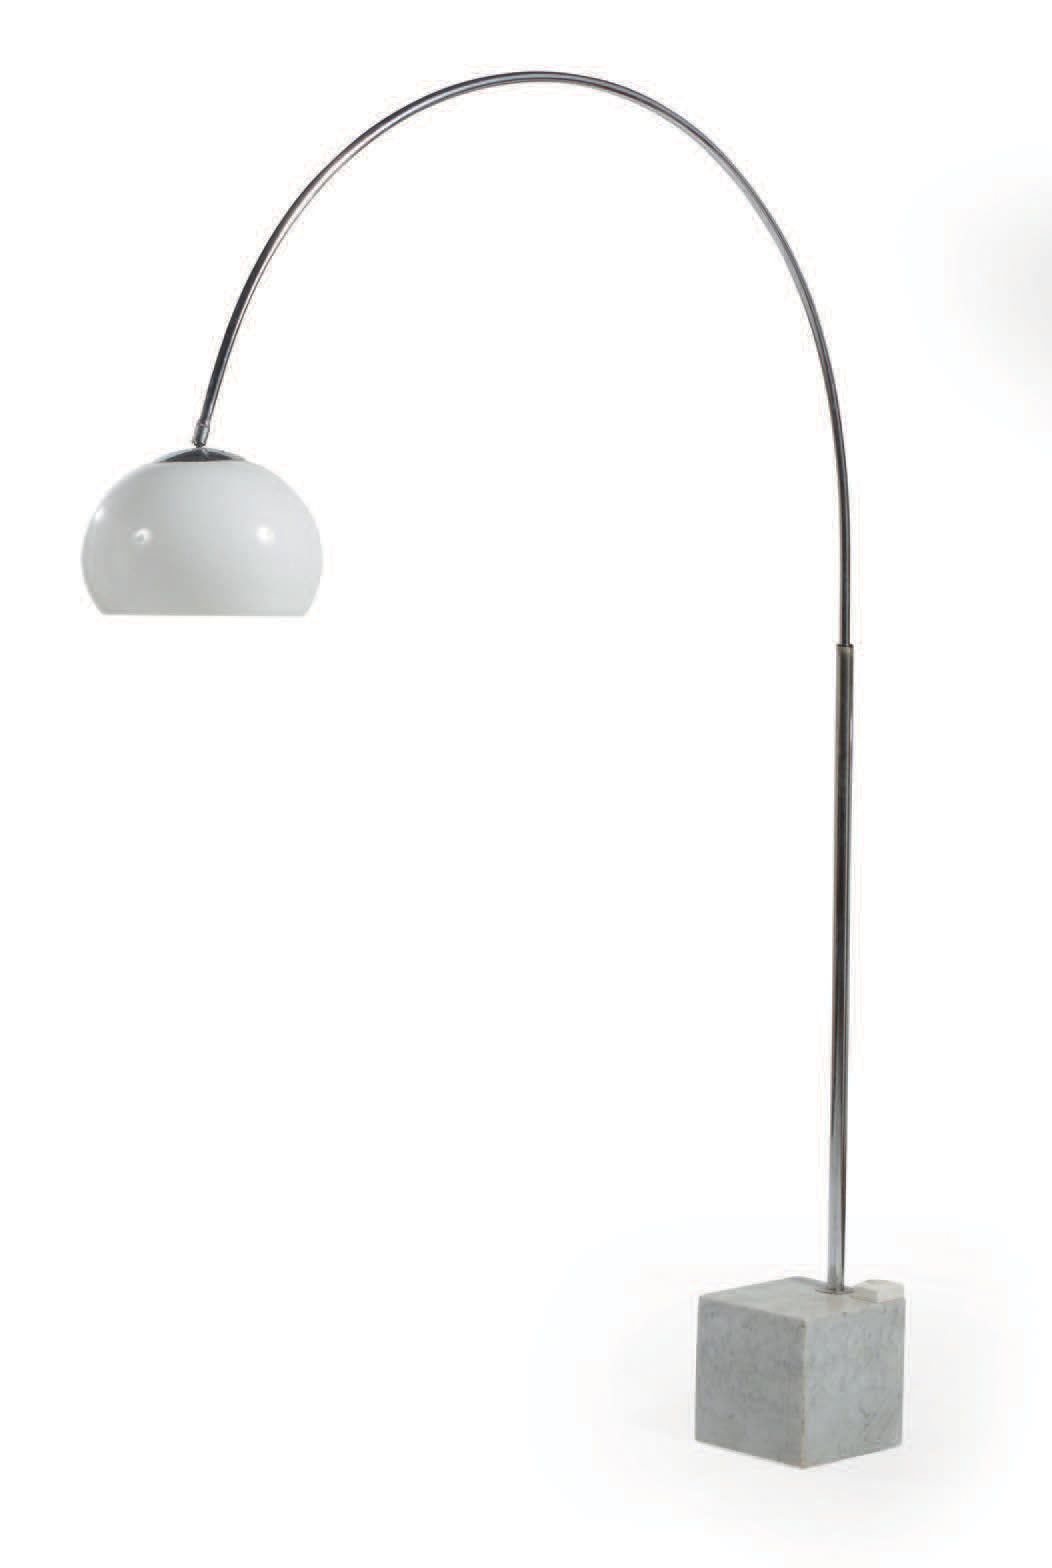 TRAVAIL ITALIEN 落地灯，镀铬金属弧形可调节圆柱形灯杆，置于灰色脉络的白色大理石立方体底座上
白色透明反射器
高：206厘米
 （磨损）。